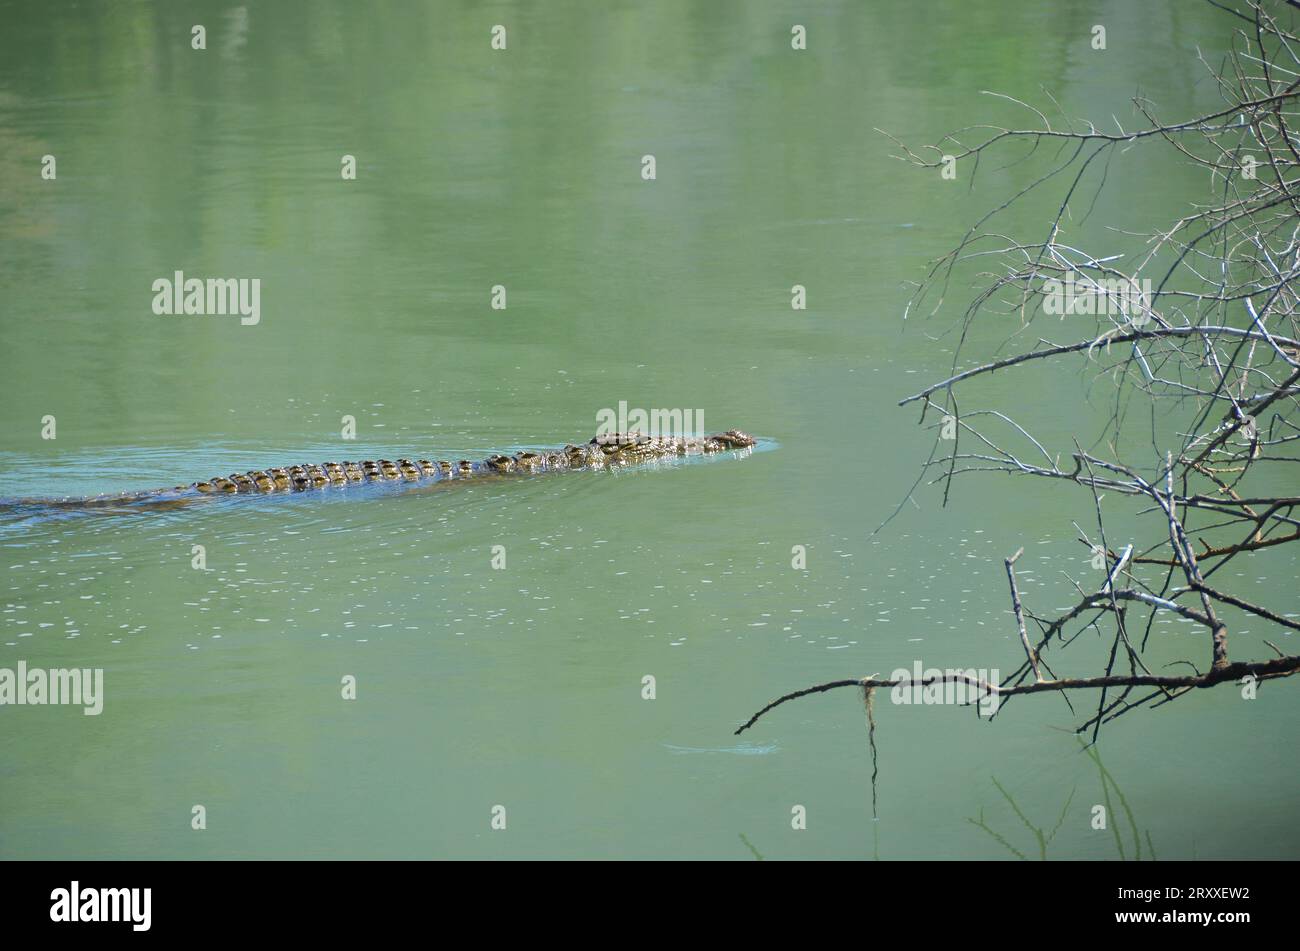 crocodile in the river Stock Photo